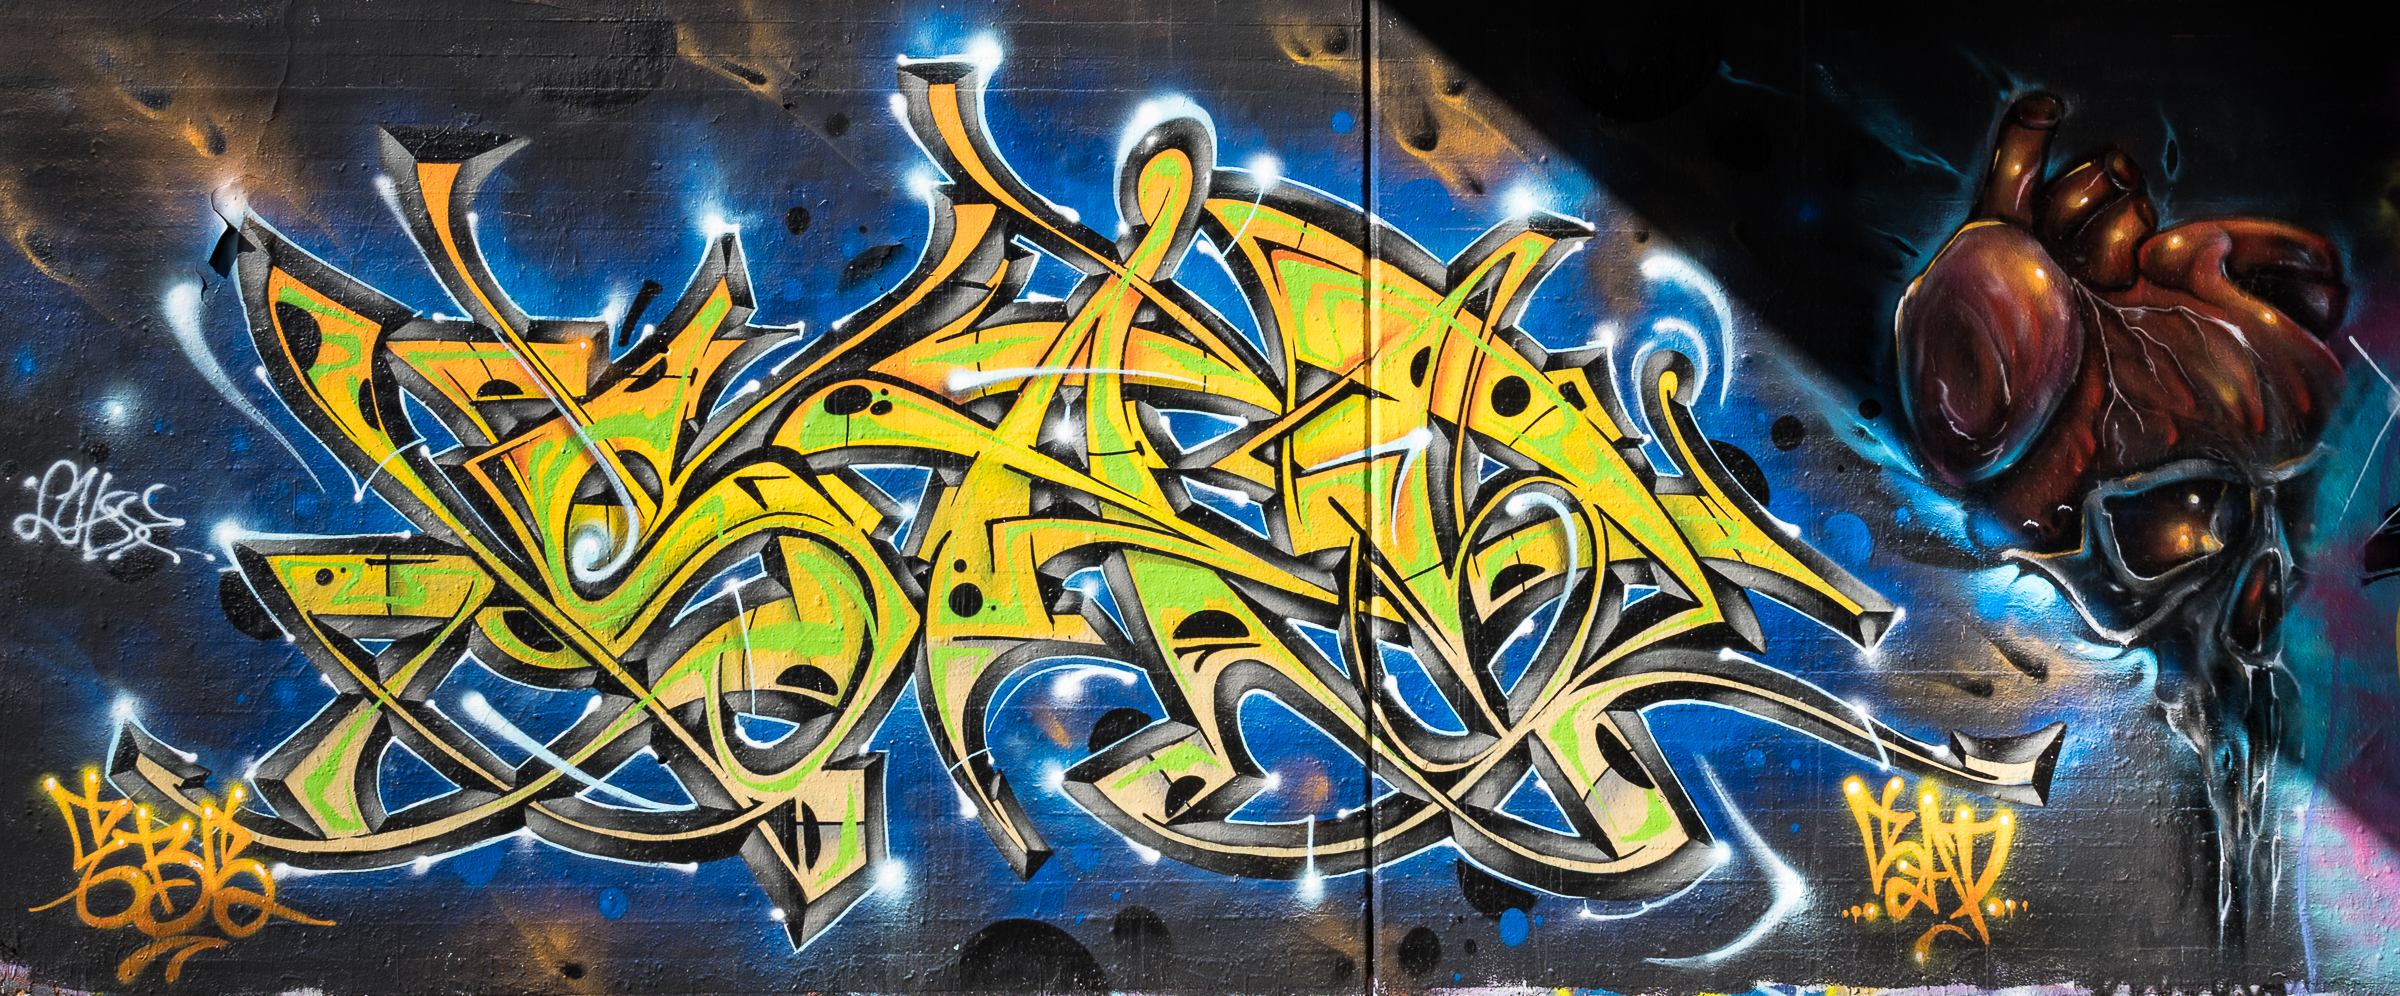 Graffito Sonnenlicht als Bildteiler